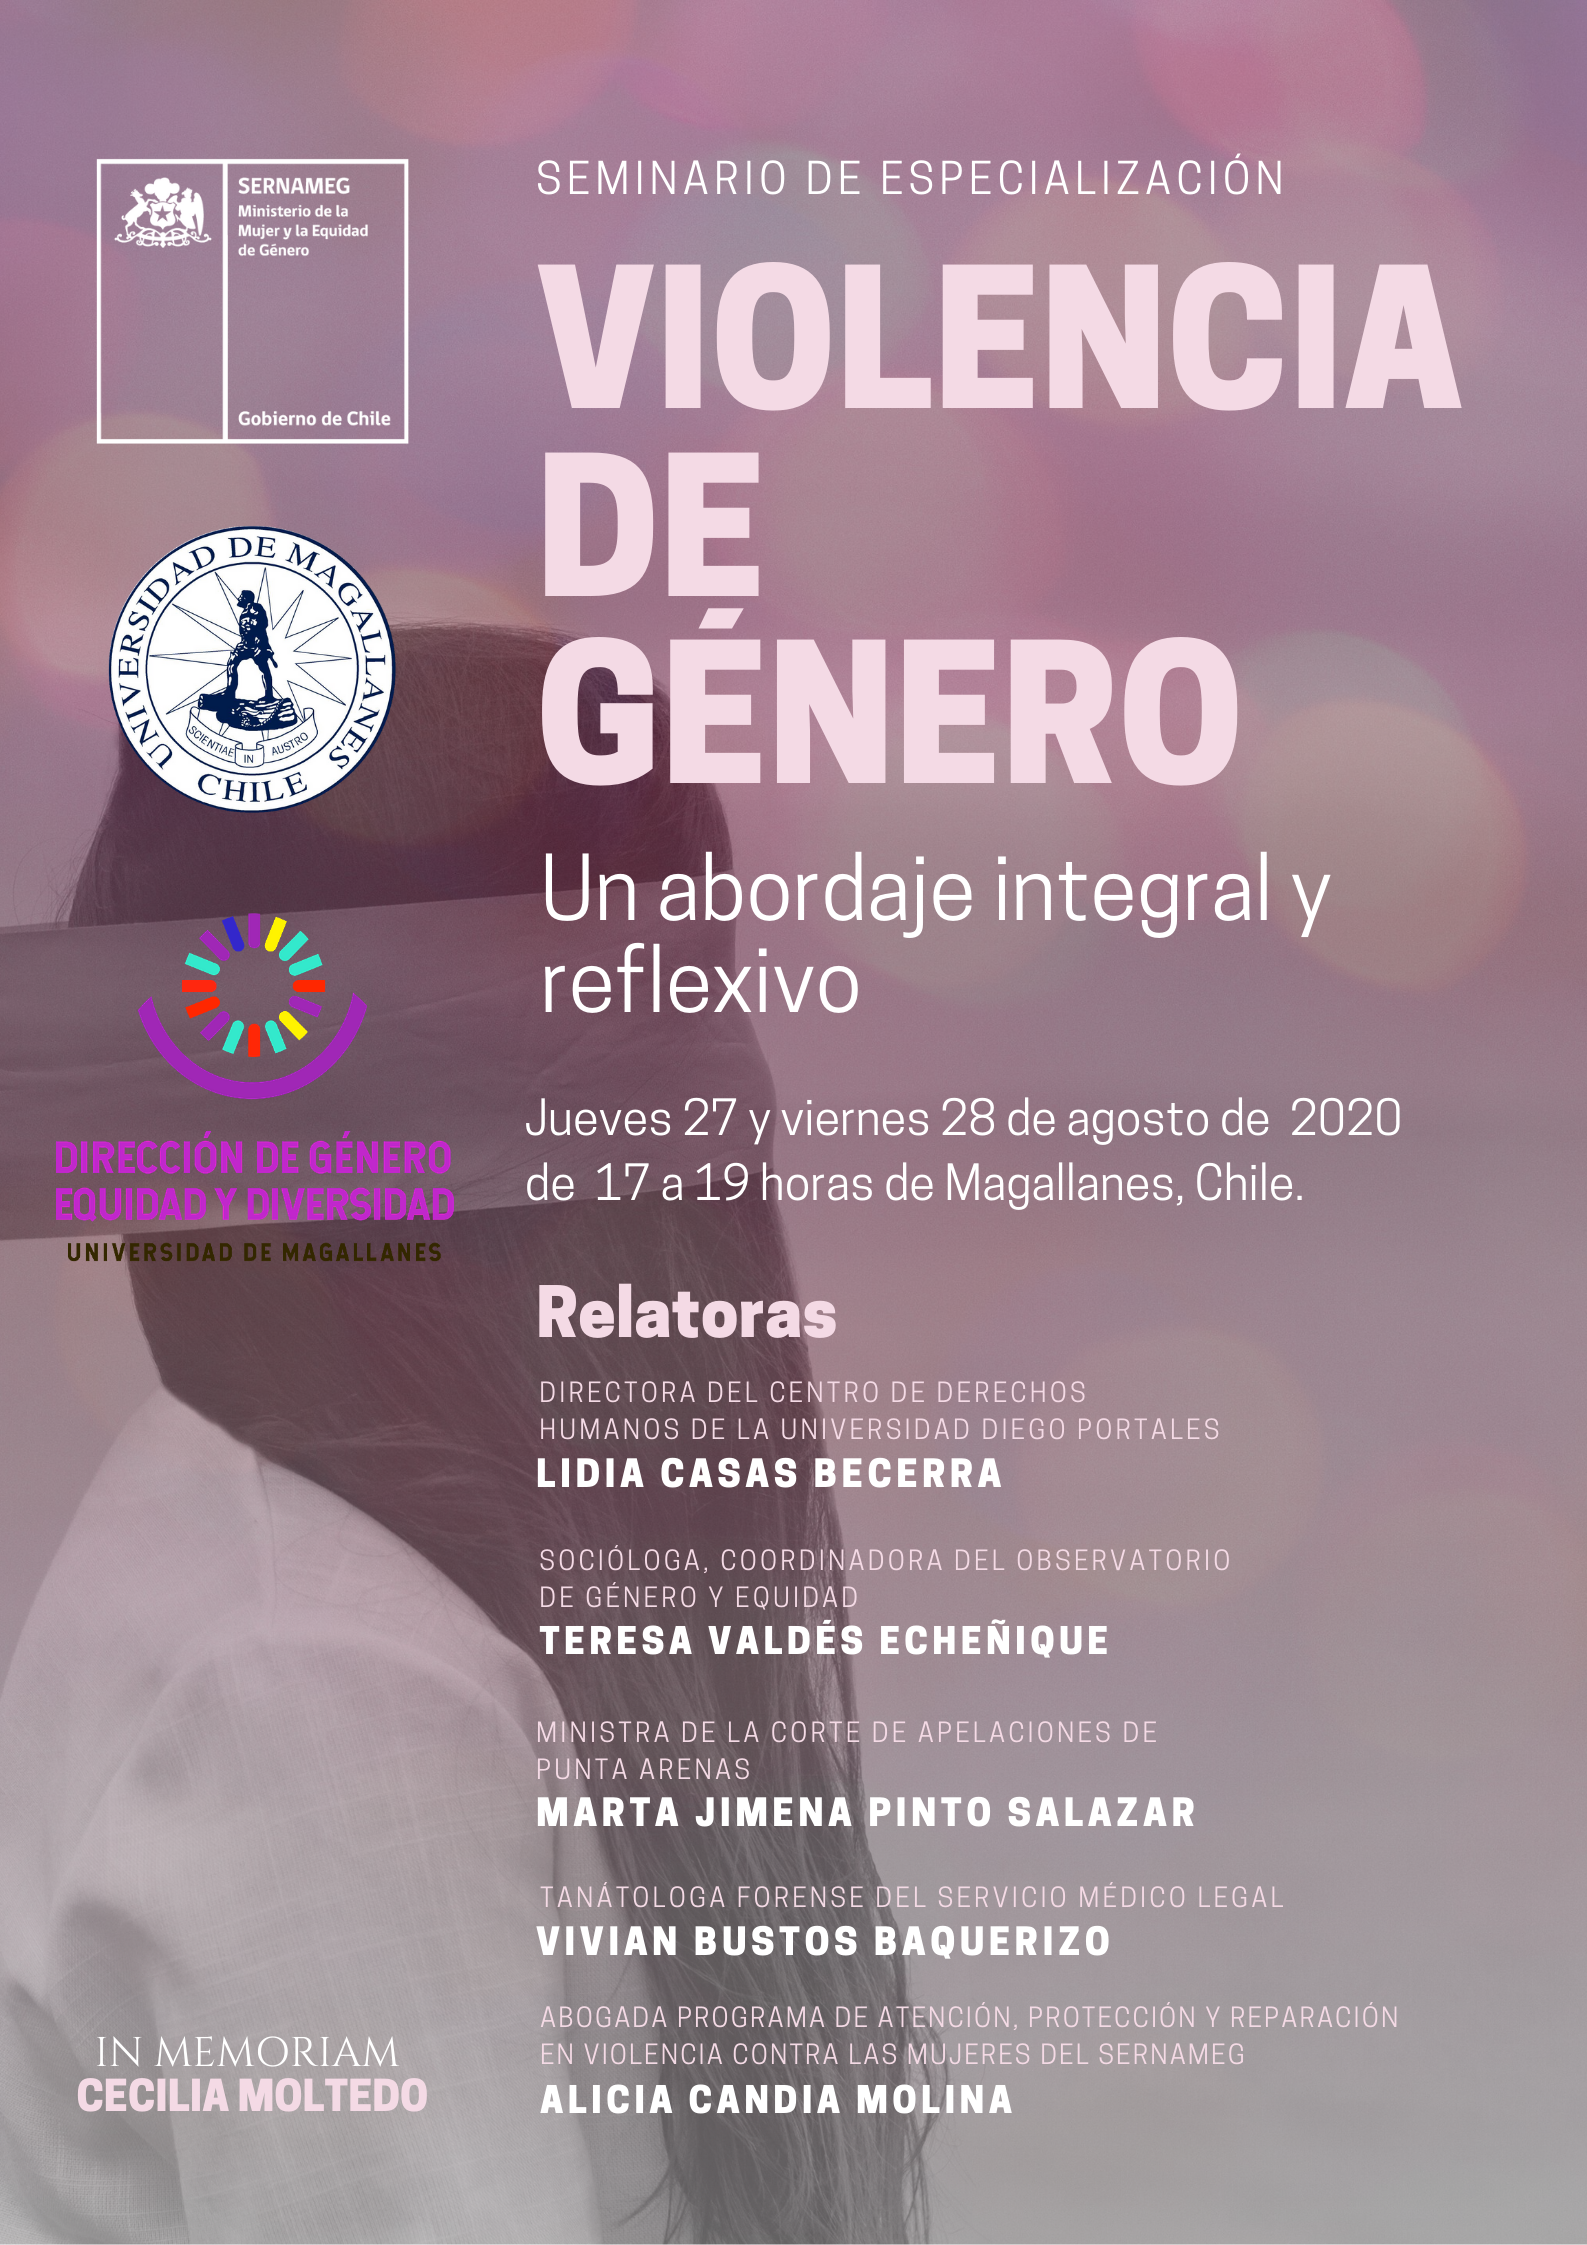 Seminario en Violencia de Género especializará a universitarios y funcionarios públicos: organizan SERNAMEG y UMAG